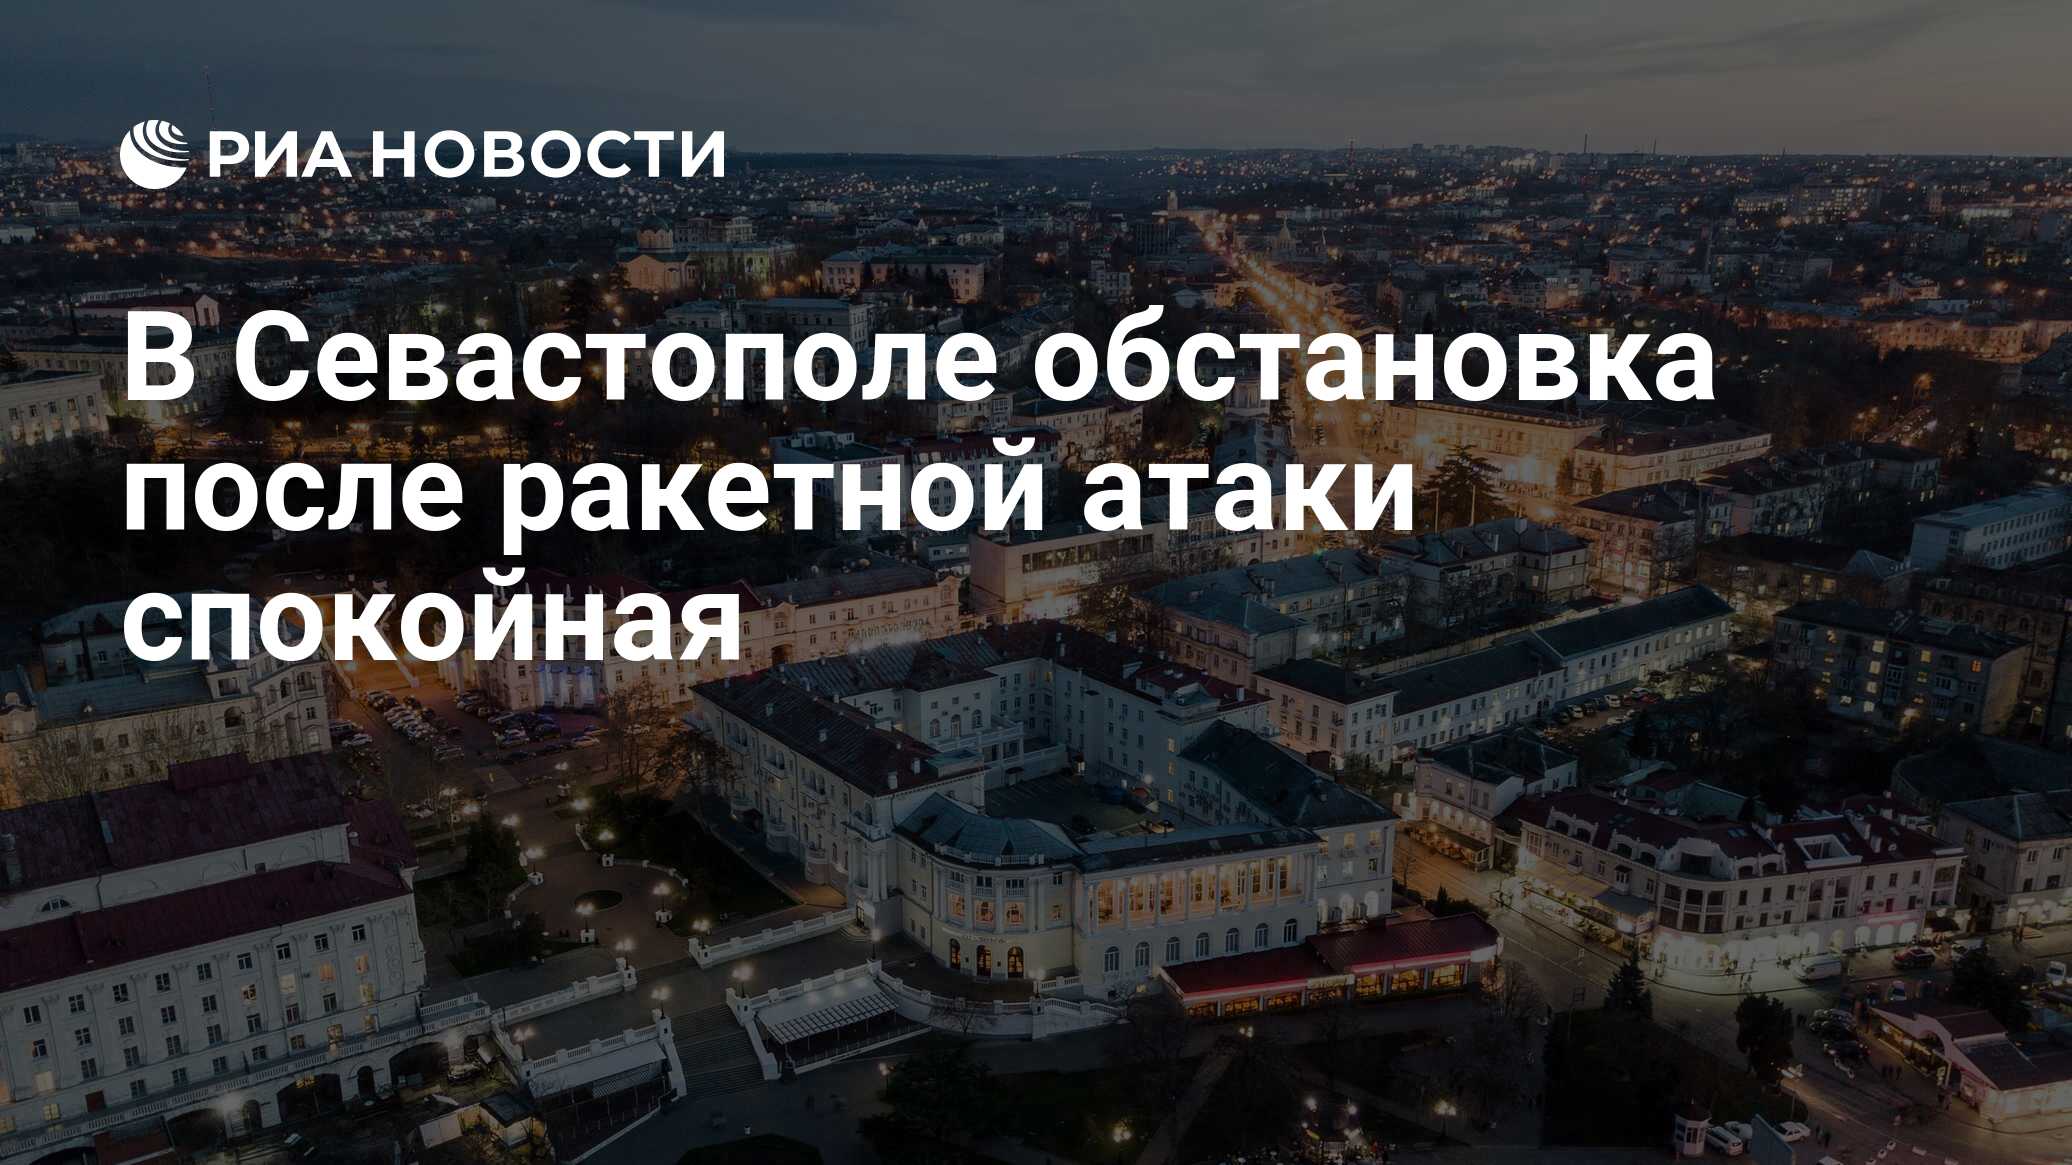 В Севастополе обстановка после ракетной атаки спокойная - РИА Новости ...